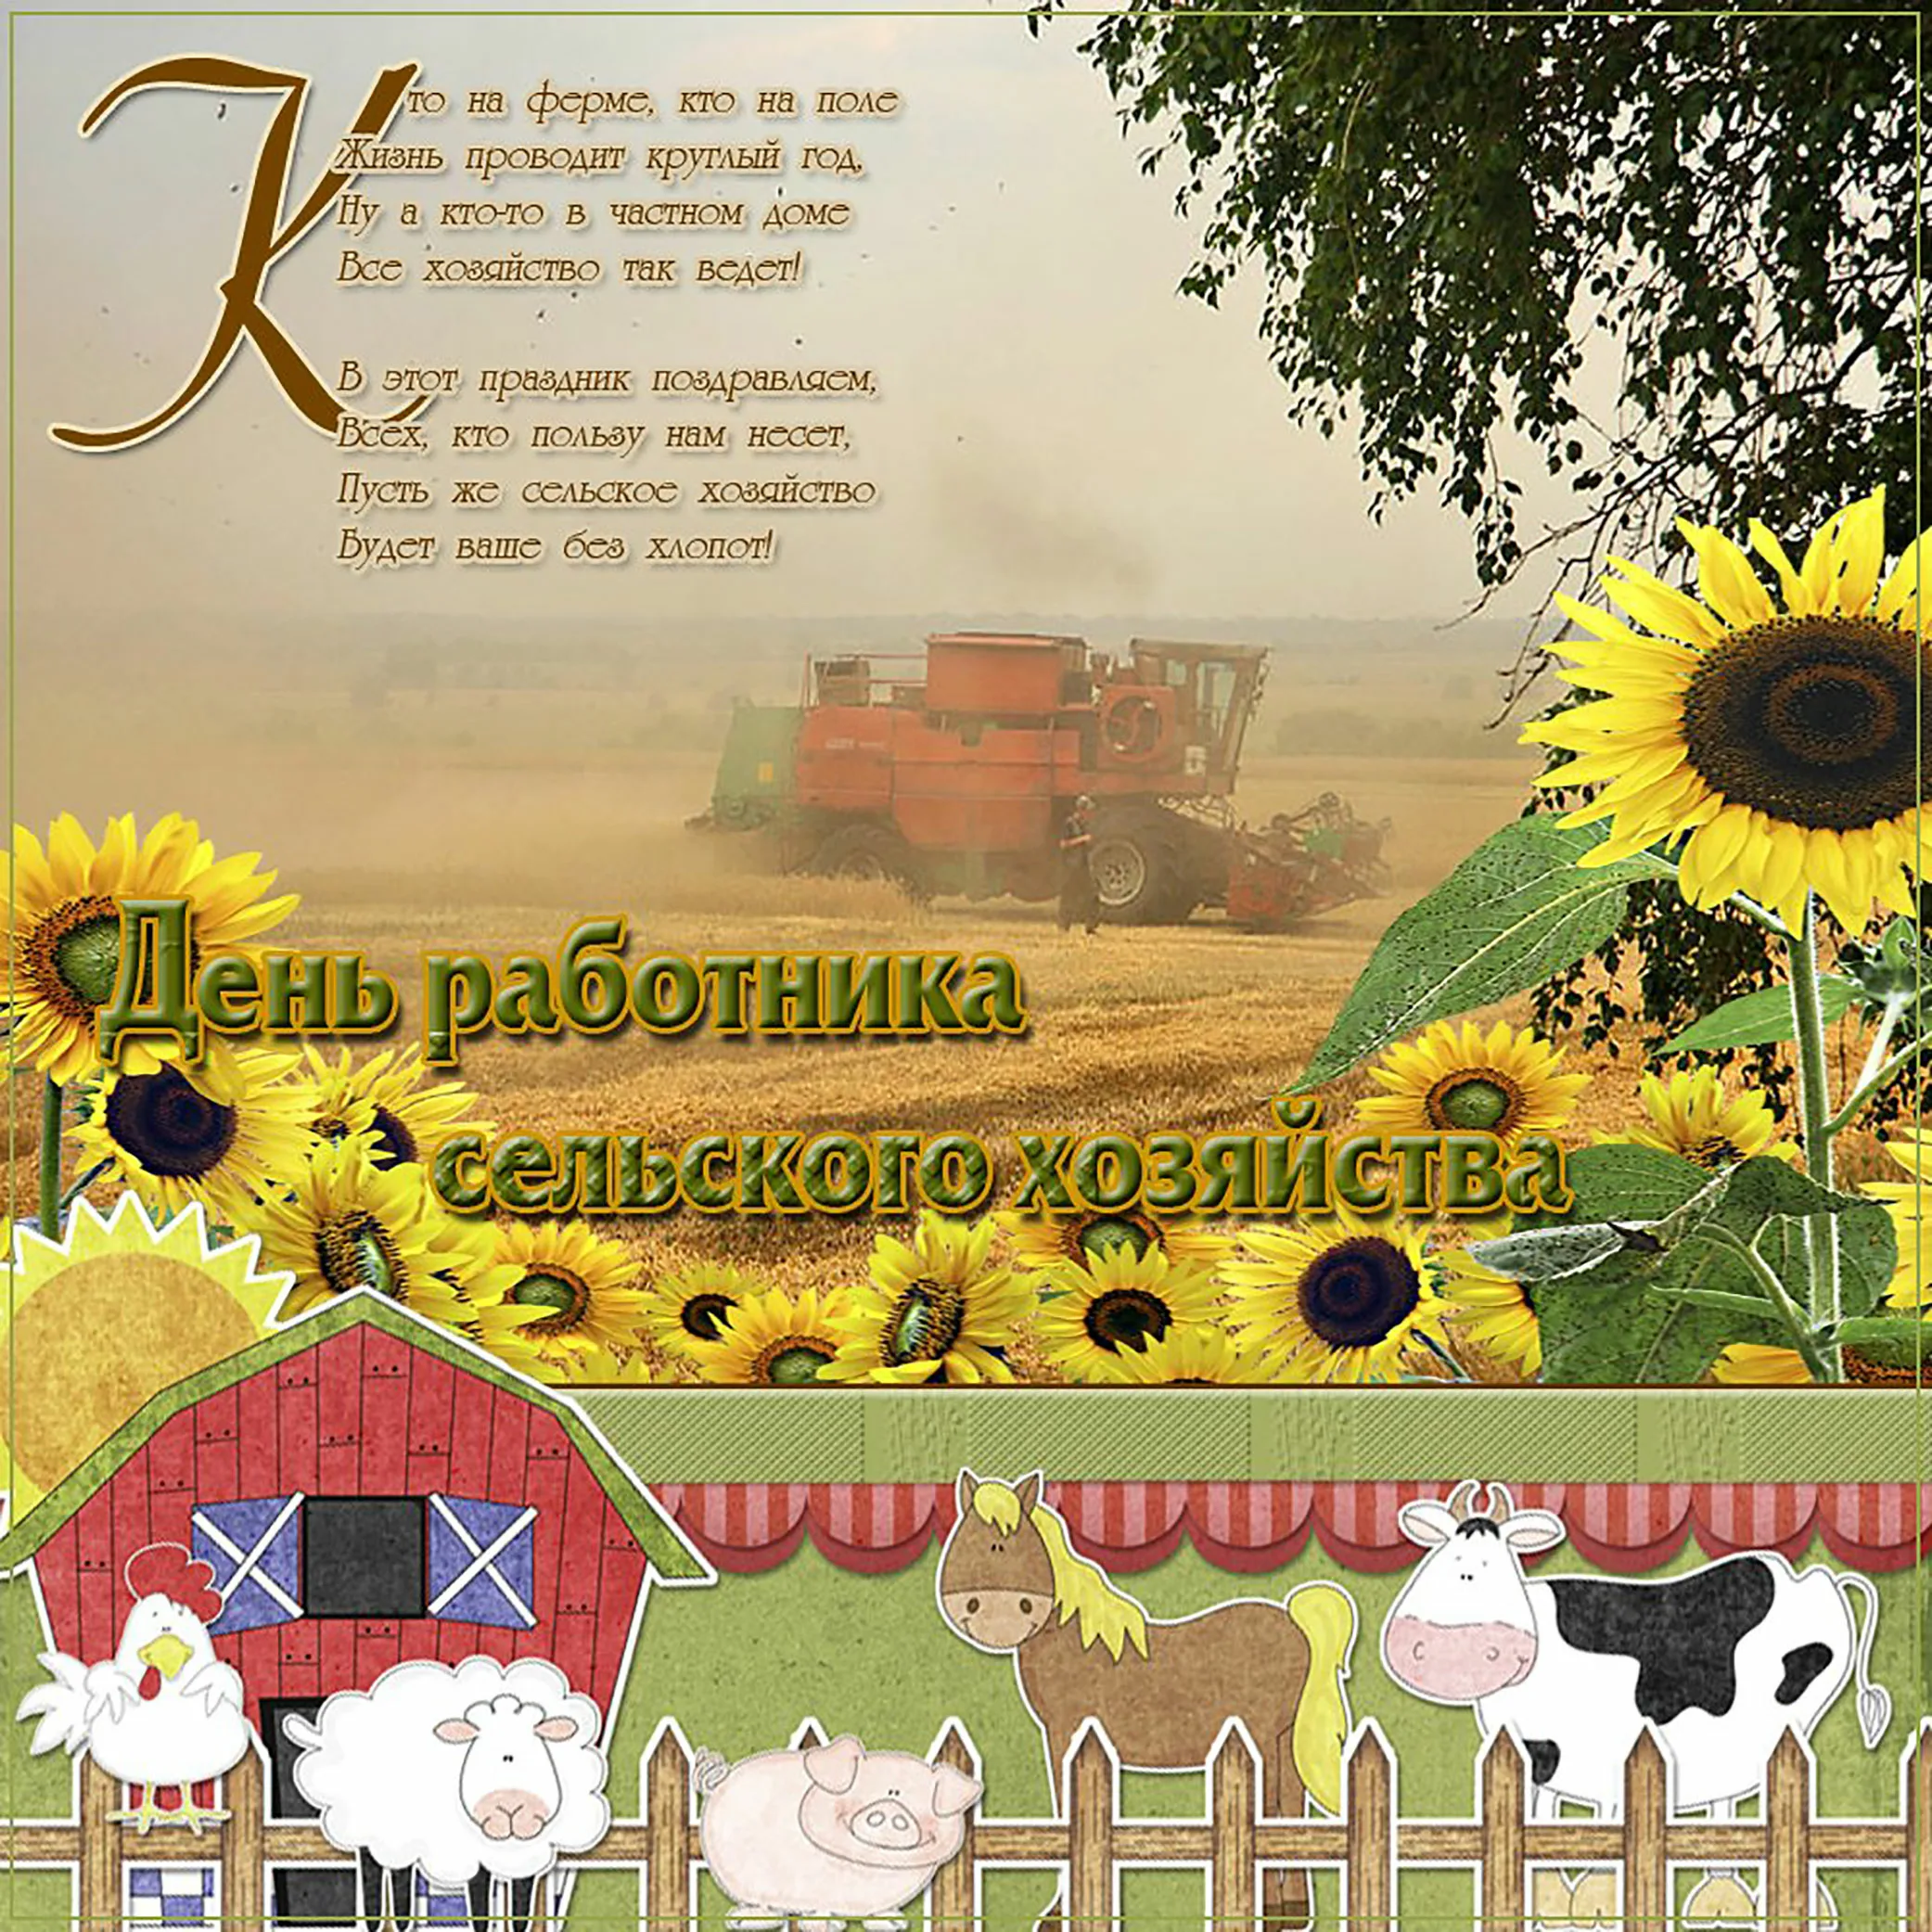 Фото Поздравления с днем работников сельского хозяйства Украины #1